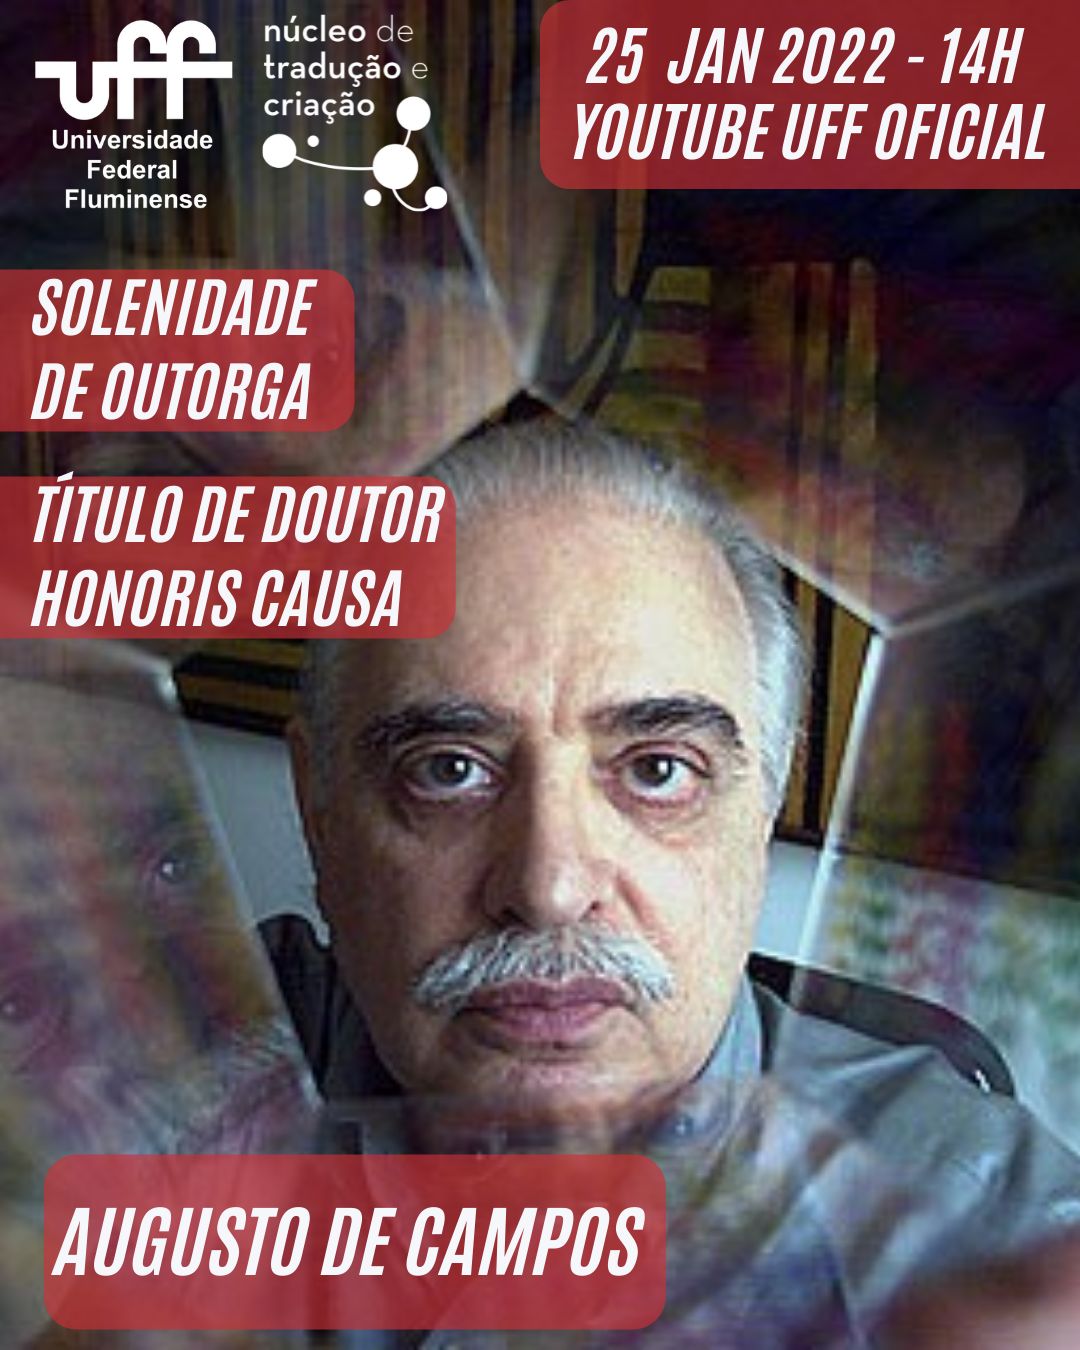 Augusto de Campos, Flyer 2